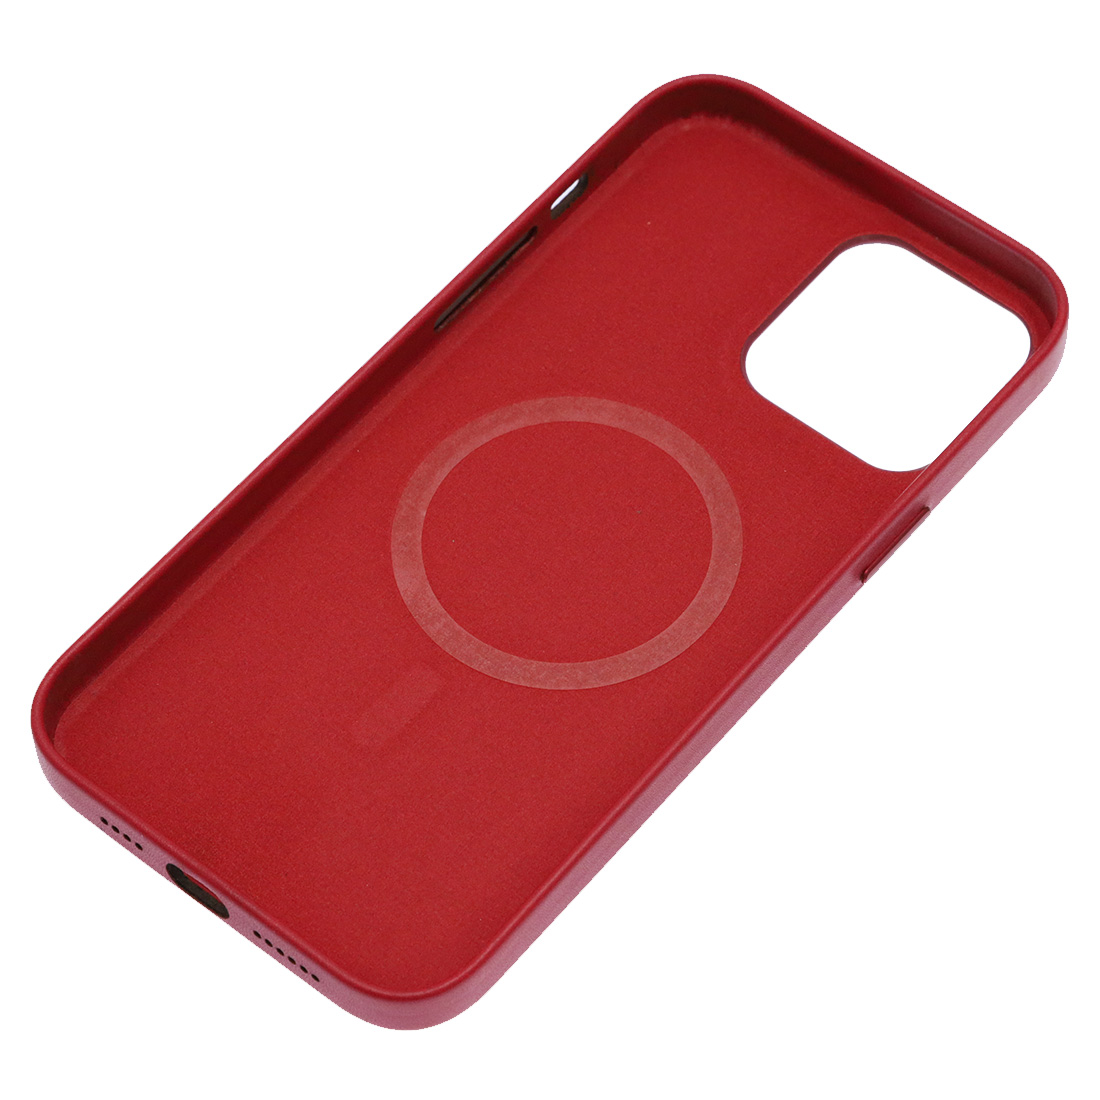 Чехол накладка Leather Case с поддержкой MagSafe для APPLE iPhone 13 Pro Max, силикон, бархат, экокожа, цвет малиновый